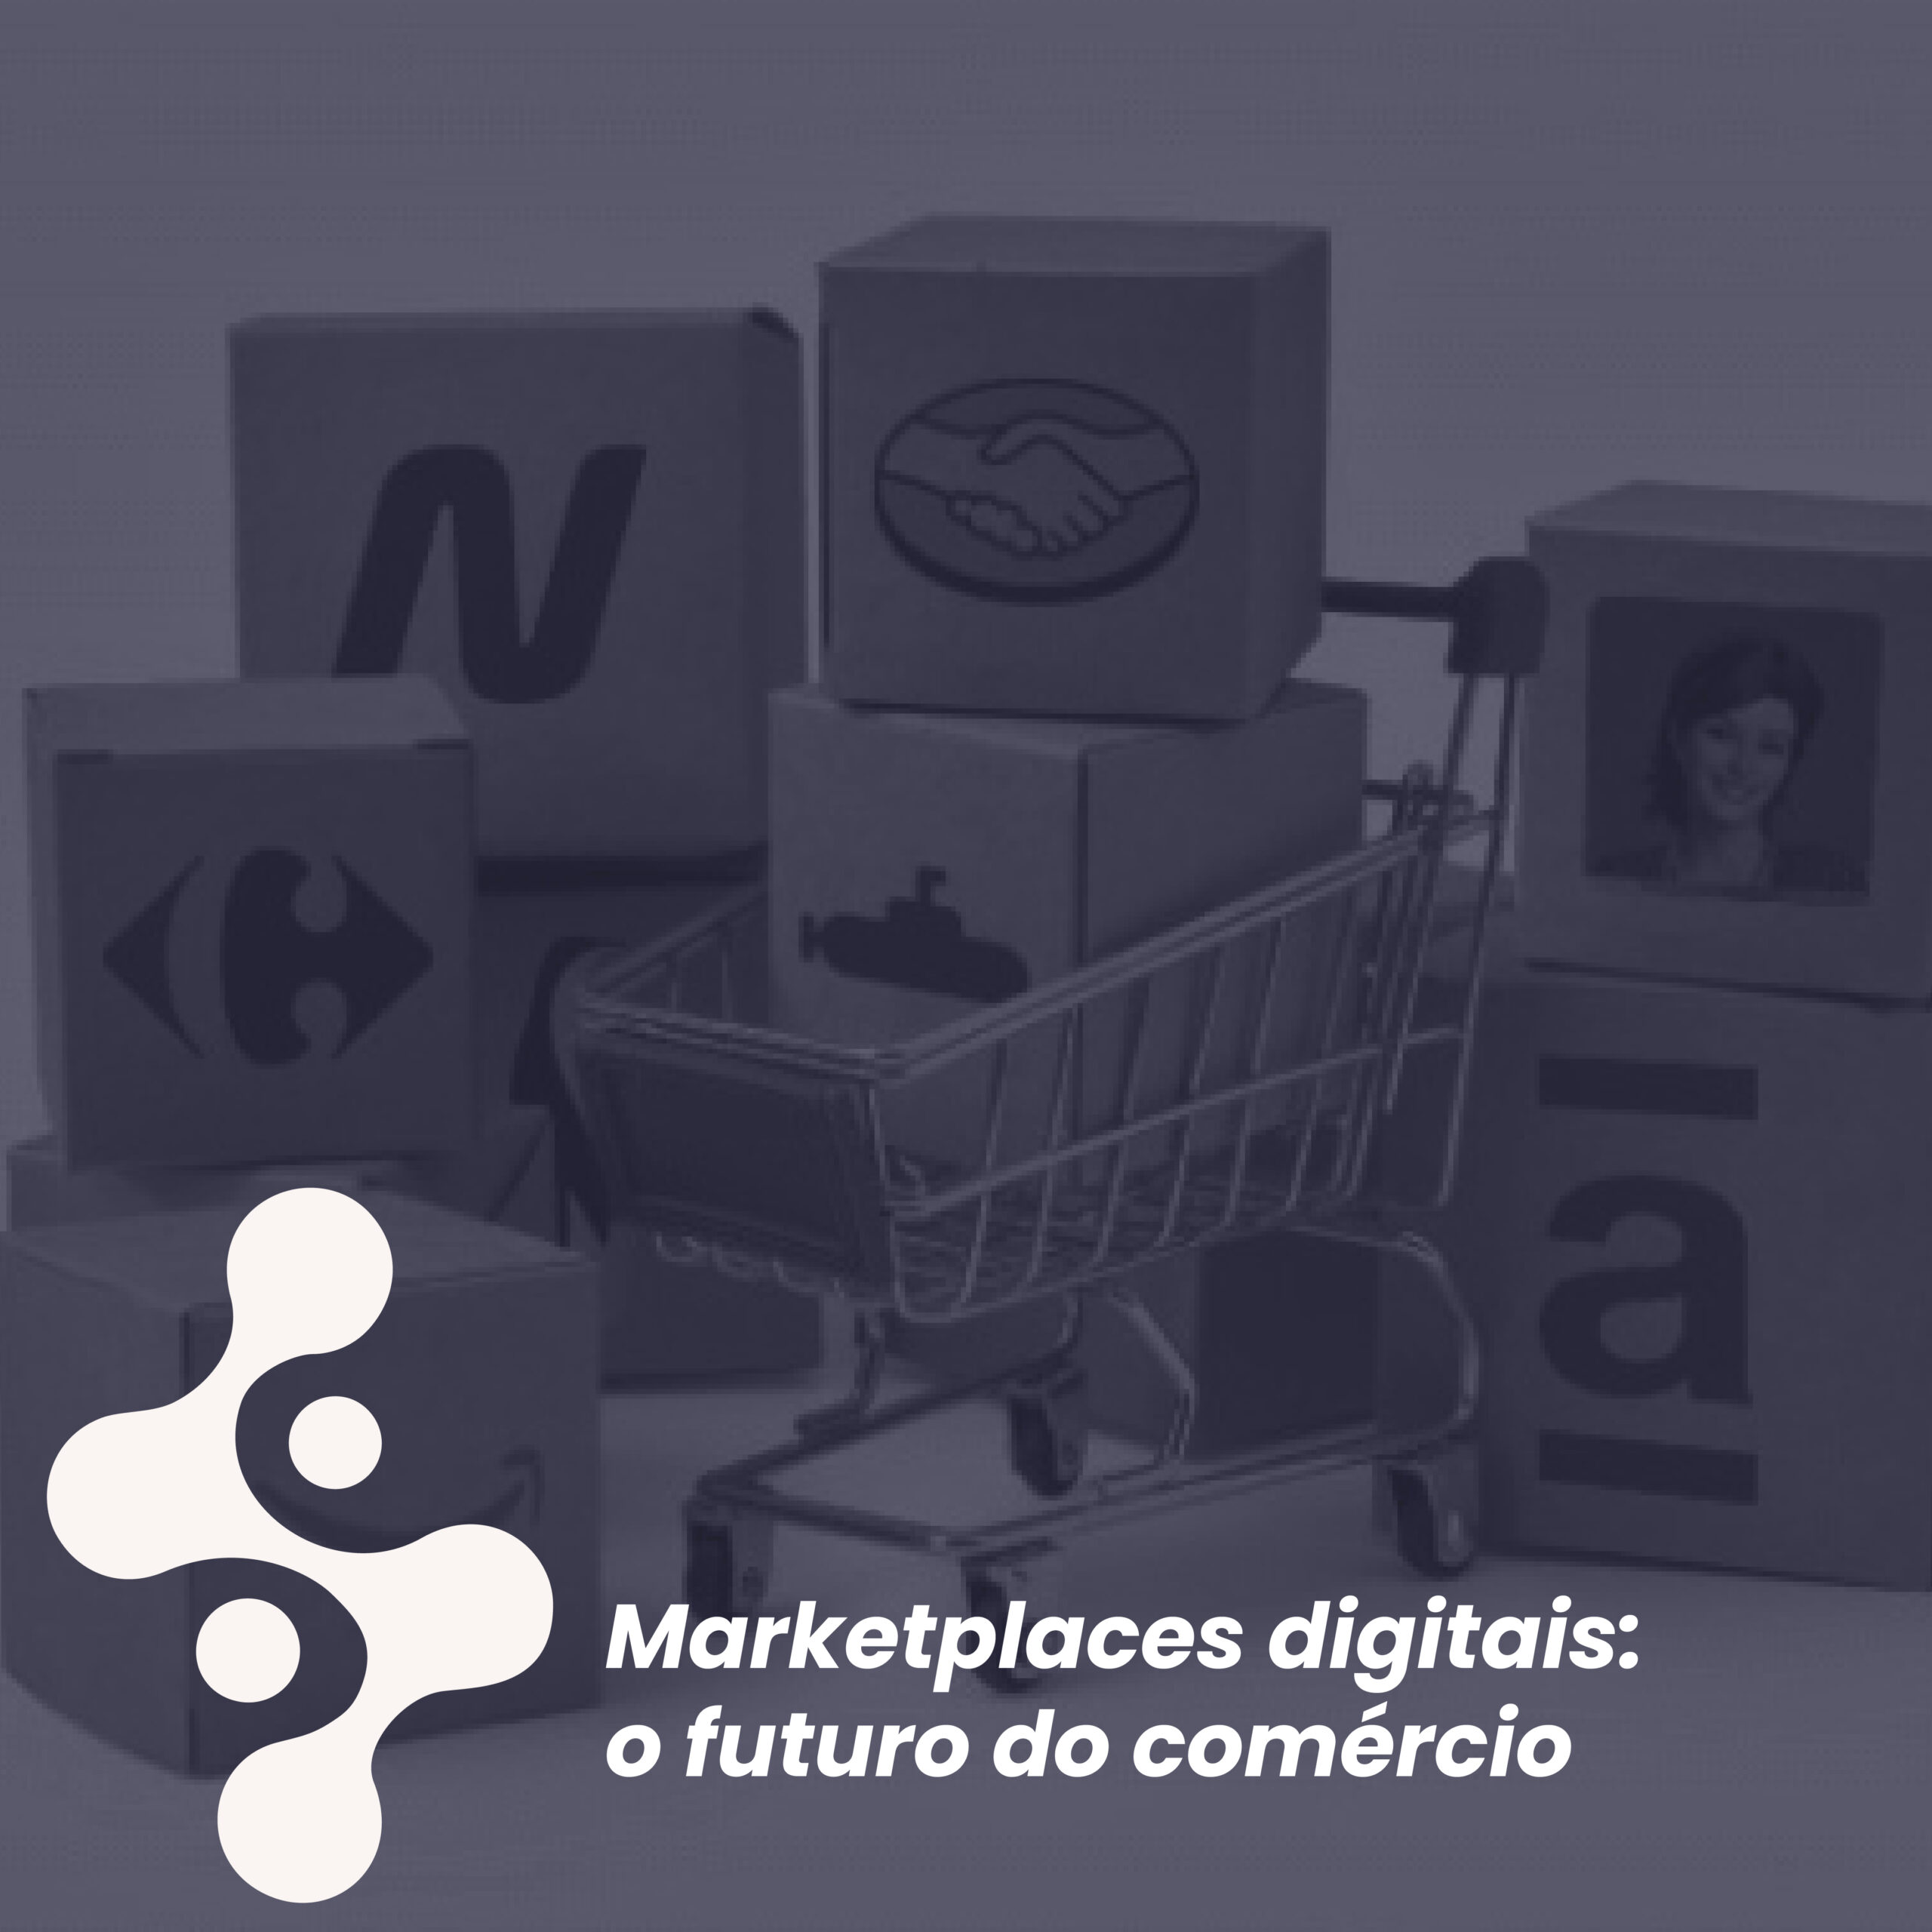 Marketplaces digitais: o futuro do comércio